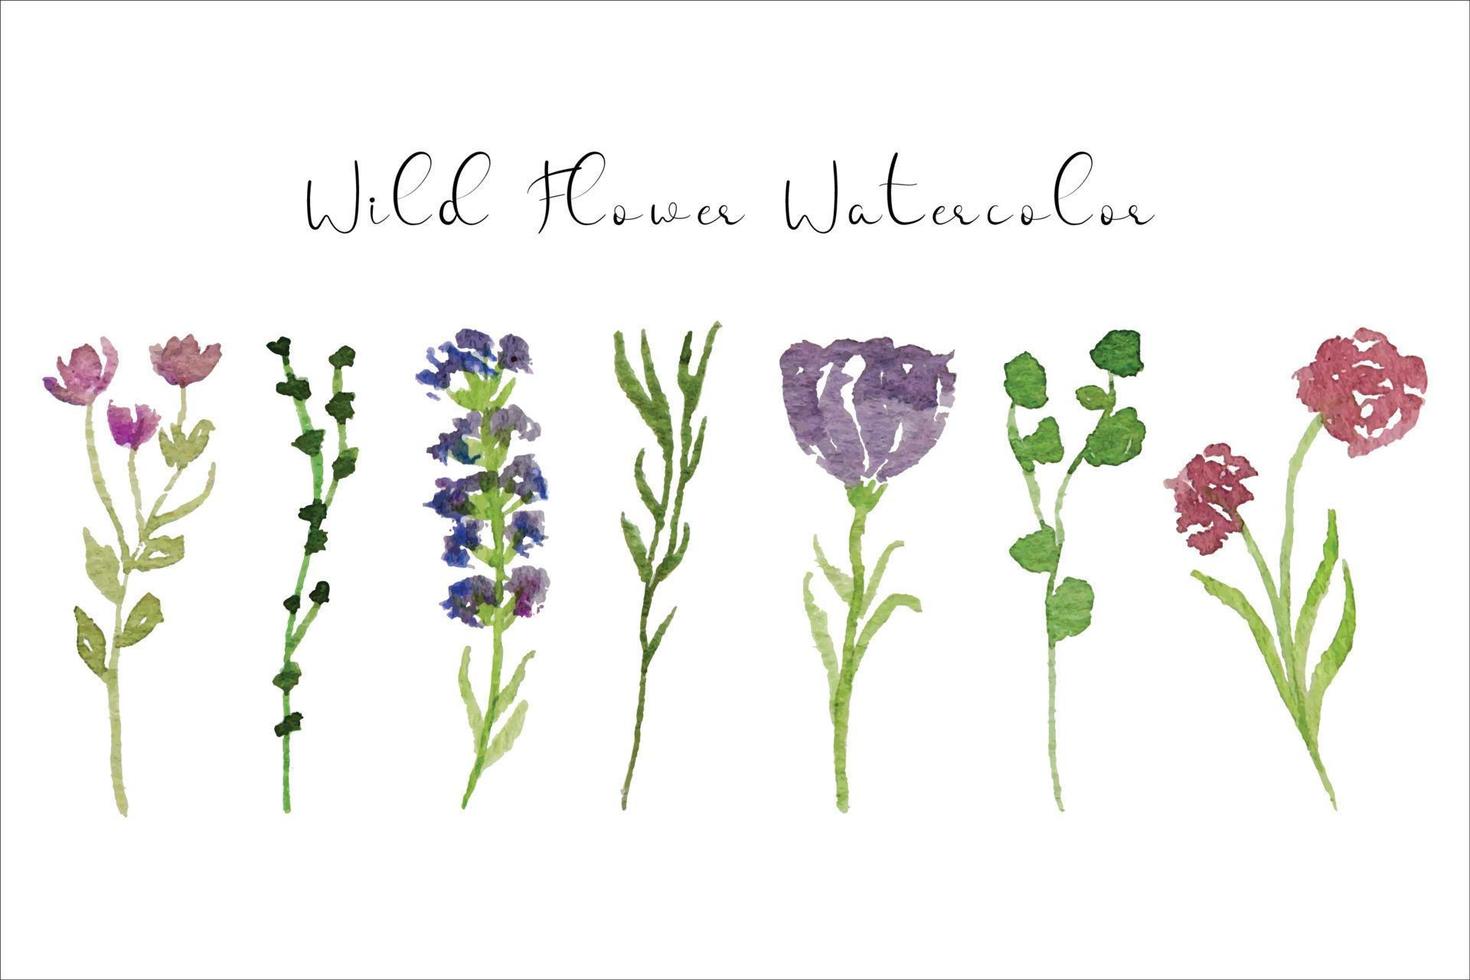 schön Frühling und Sommer- wild Blume Aquarell Sammlung vektor